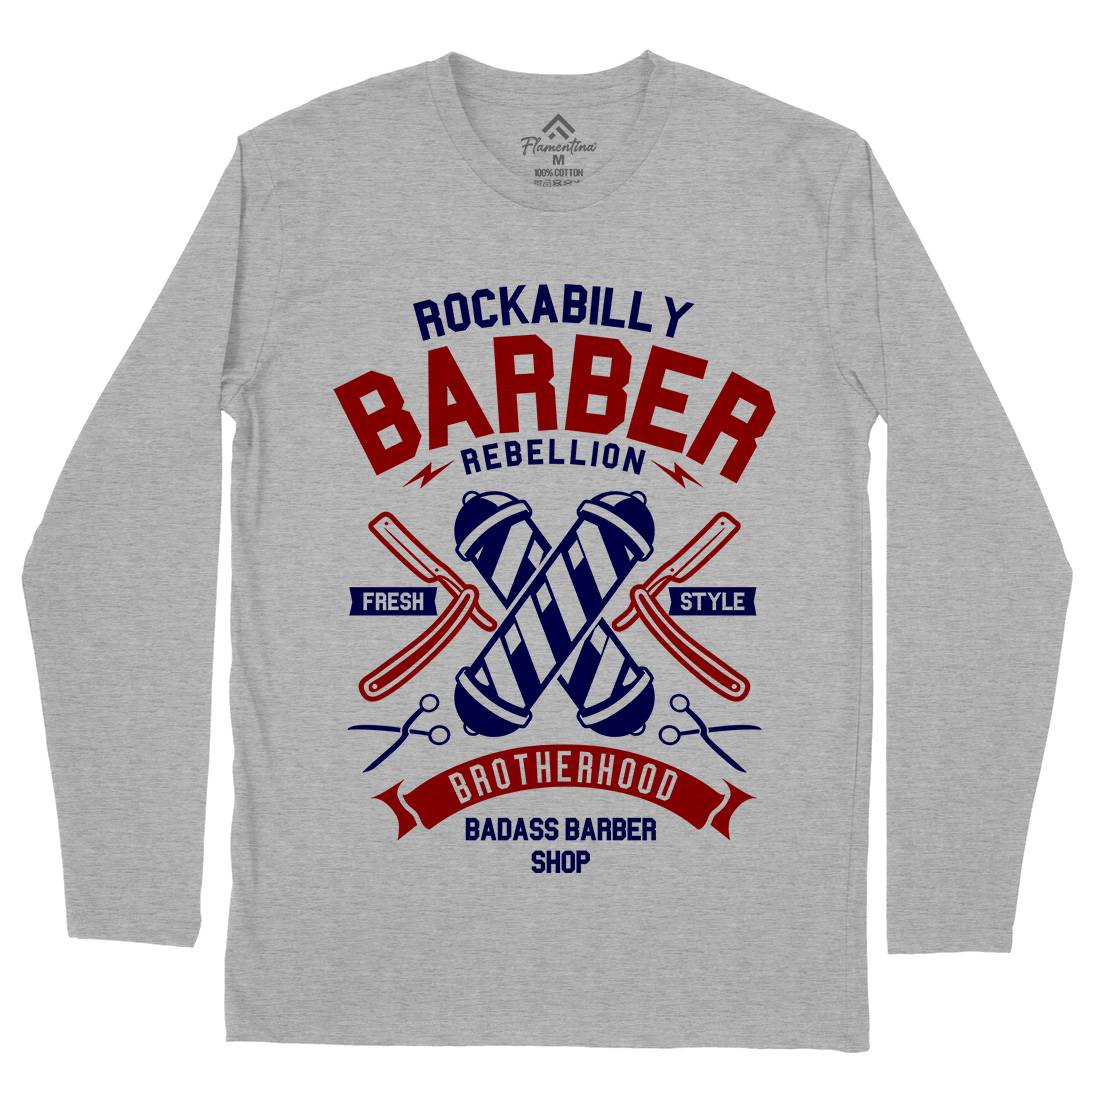 Rockabilly Mens Long Sleeve T-Shirt Barber A273